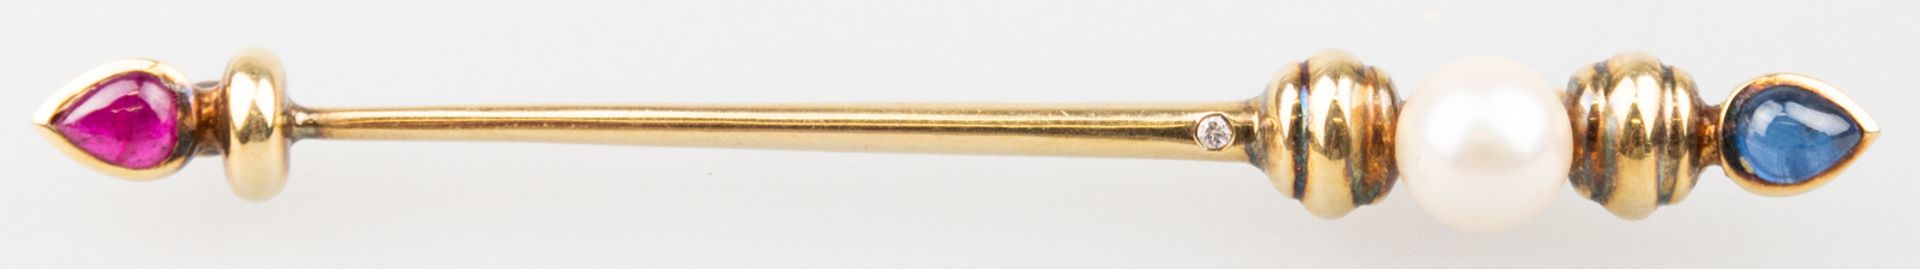 Krawattennadel, 585er GG, besetzt mit Perle, kleinem Brillant und Rubin bzw. Saphir an den Enden, L